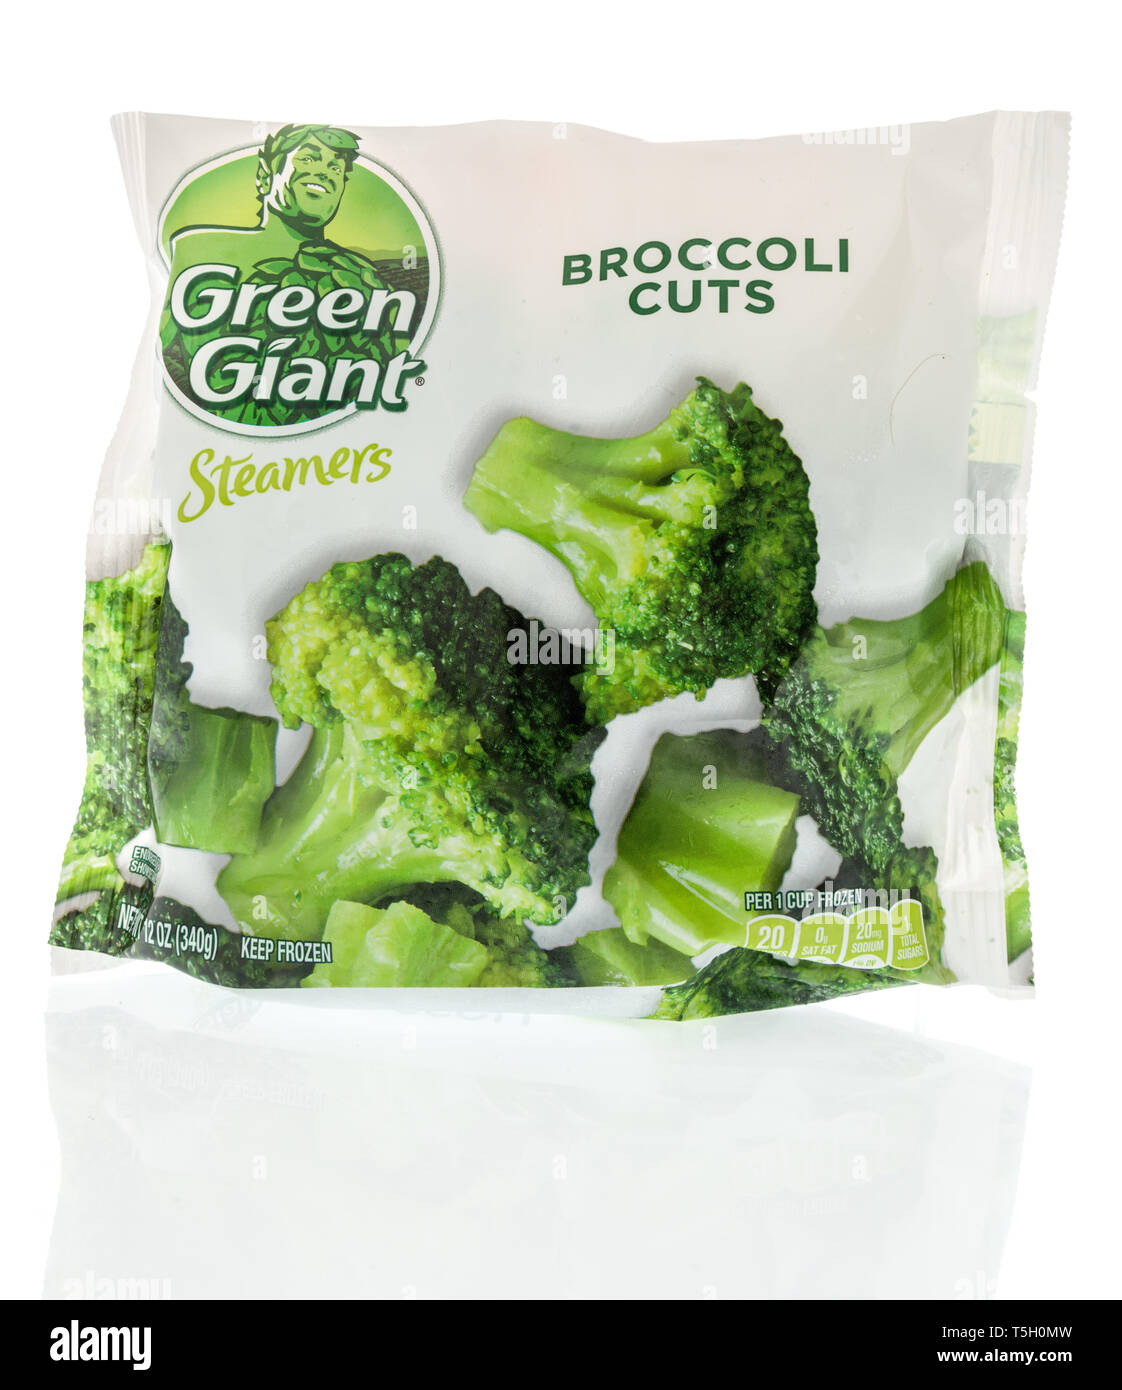 Winneconne, WI - 22. April 2019: ein Paket von grüner Riese Brokkoli schnitten gefrorenes Gemüse auf einem isolierten Hintergrund Stockfoto